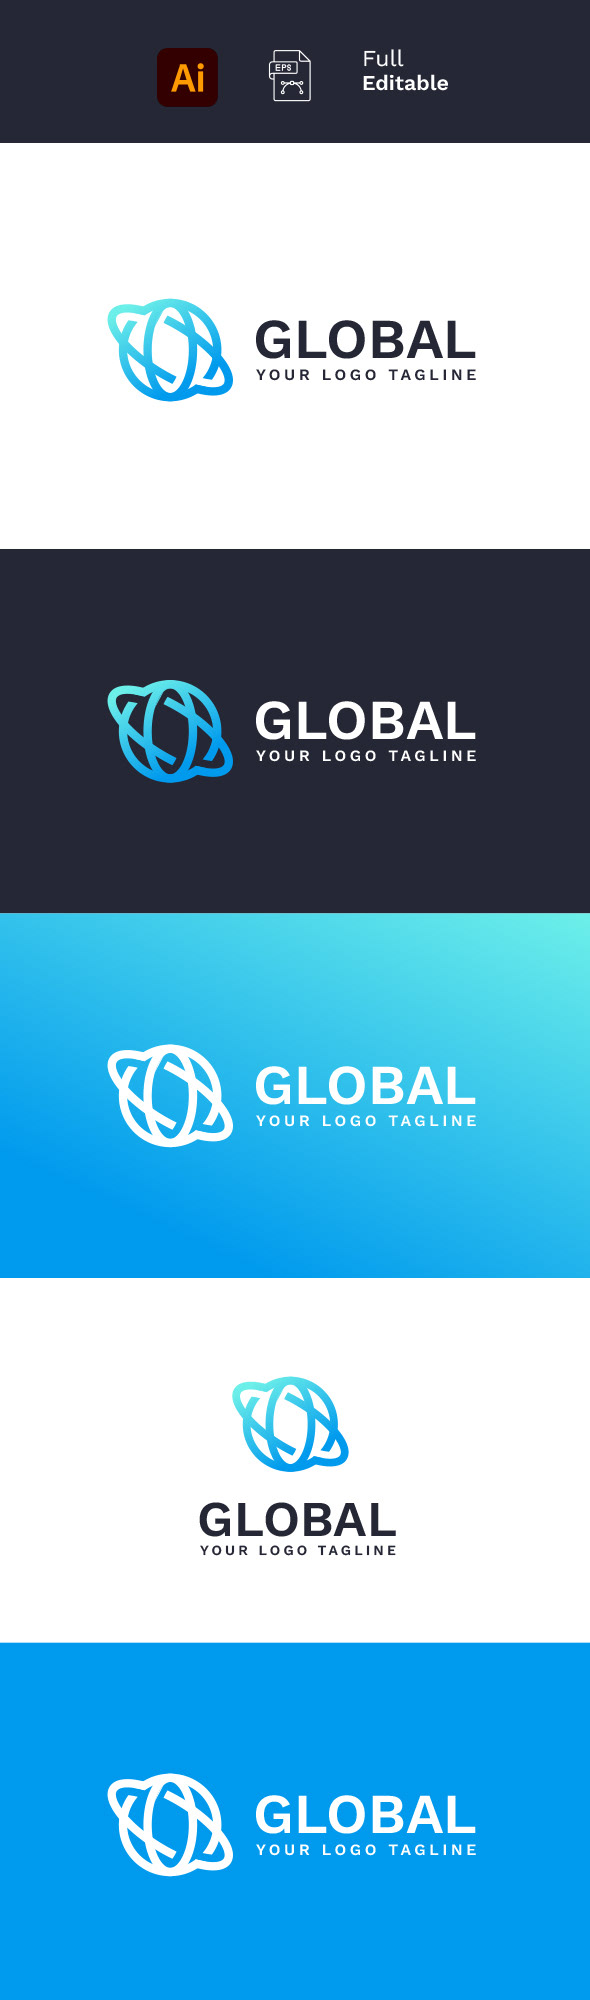 brand identity branding  business Global global logo Logo Design Logotype modern Technology vector